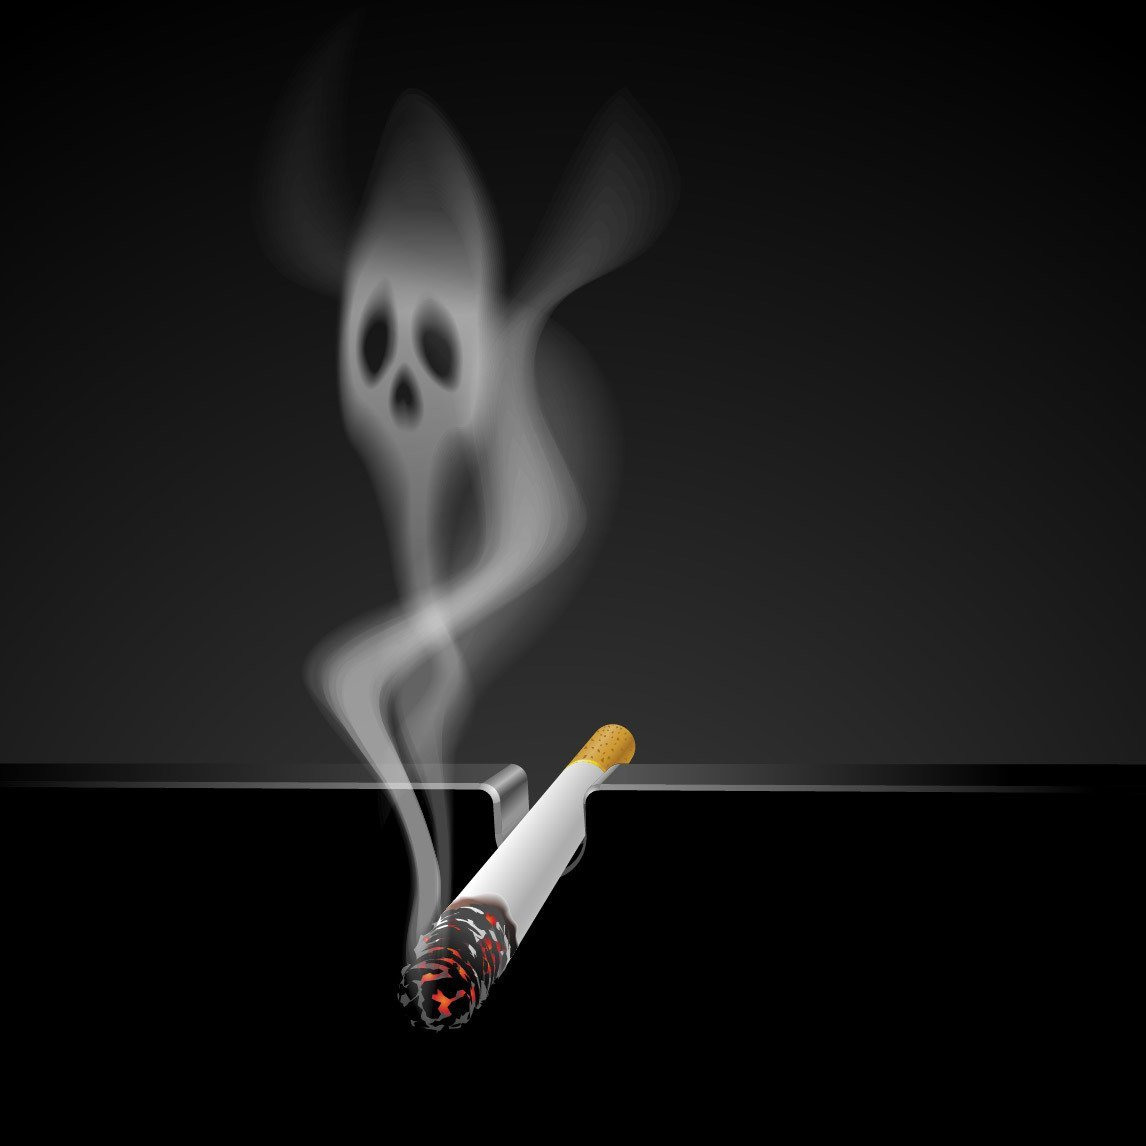 Смешные картинки о вреде курения